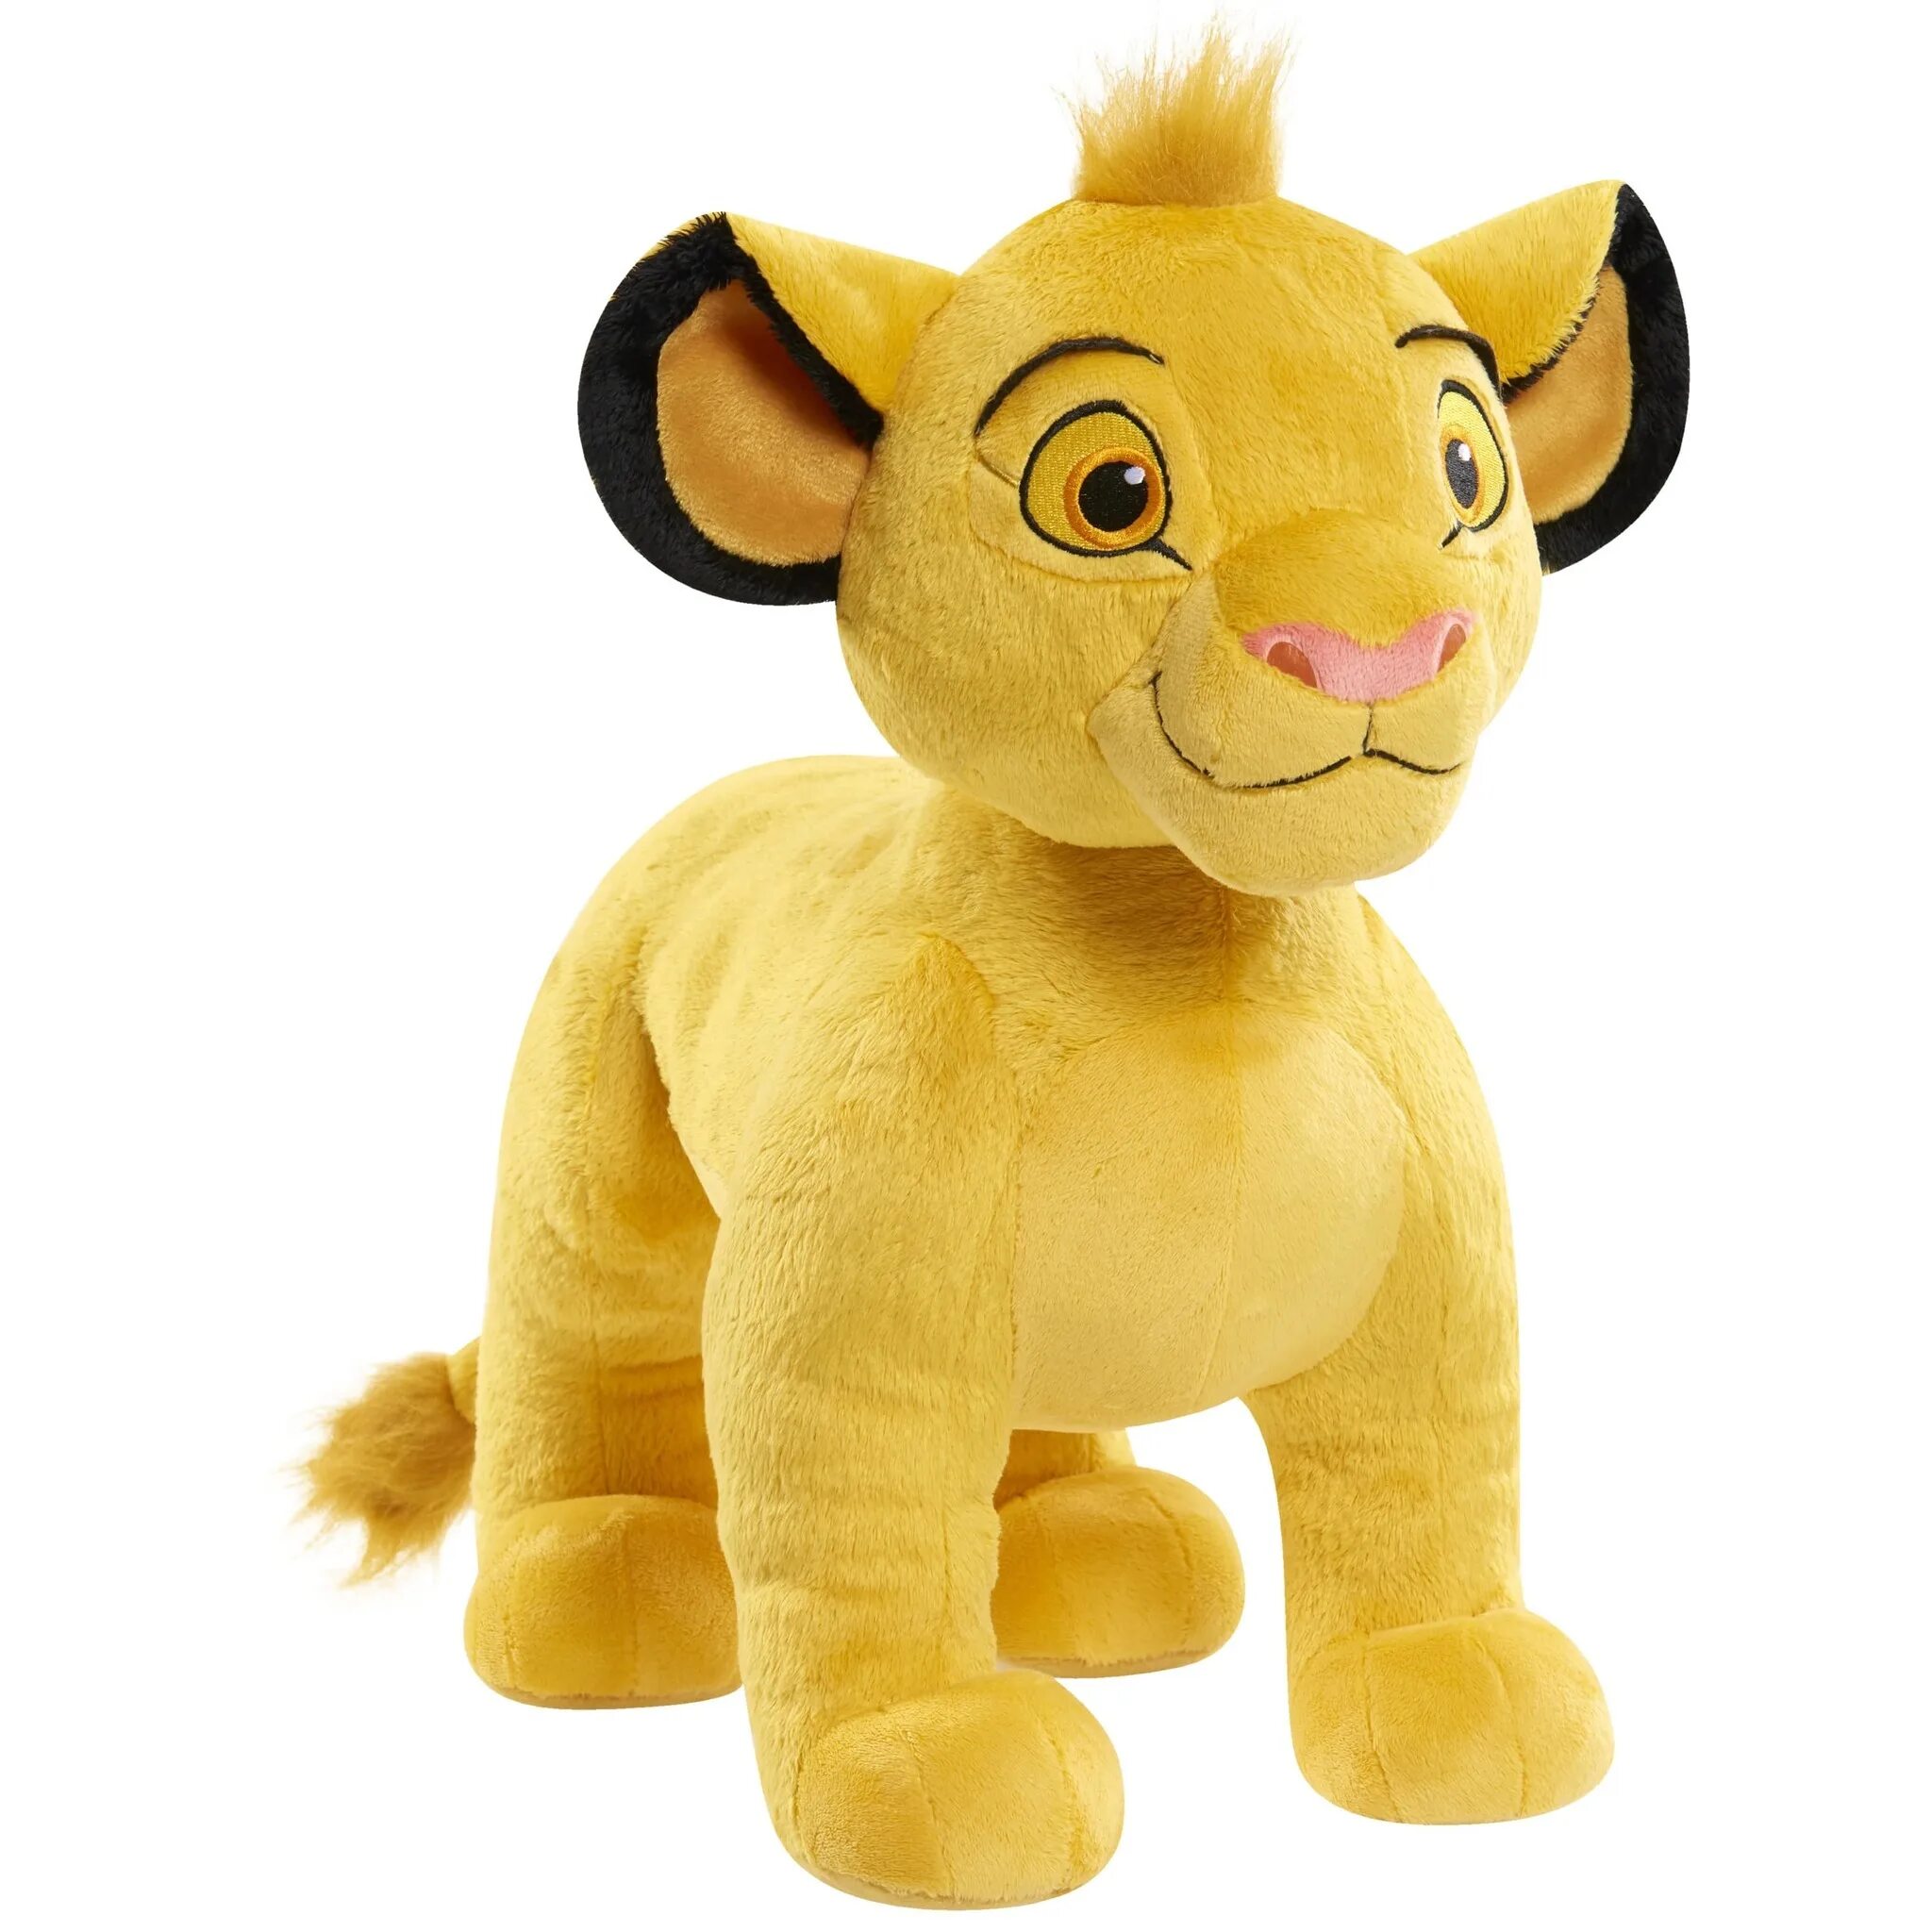 Мягкая игрушка Симба Король Лев. Мягкая игрушка Simba Кайон 25 см. Симба мягкая игрушка Дисней. Симба Король Лев игрушка Disney.